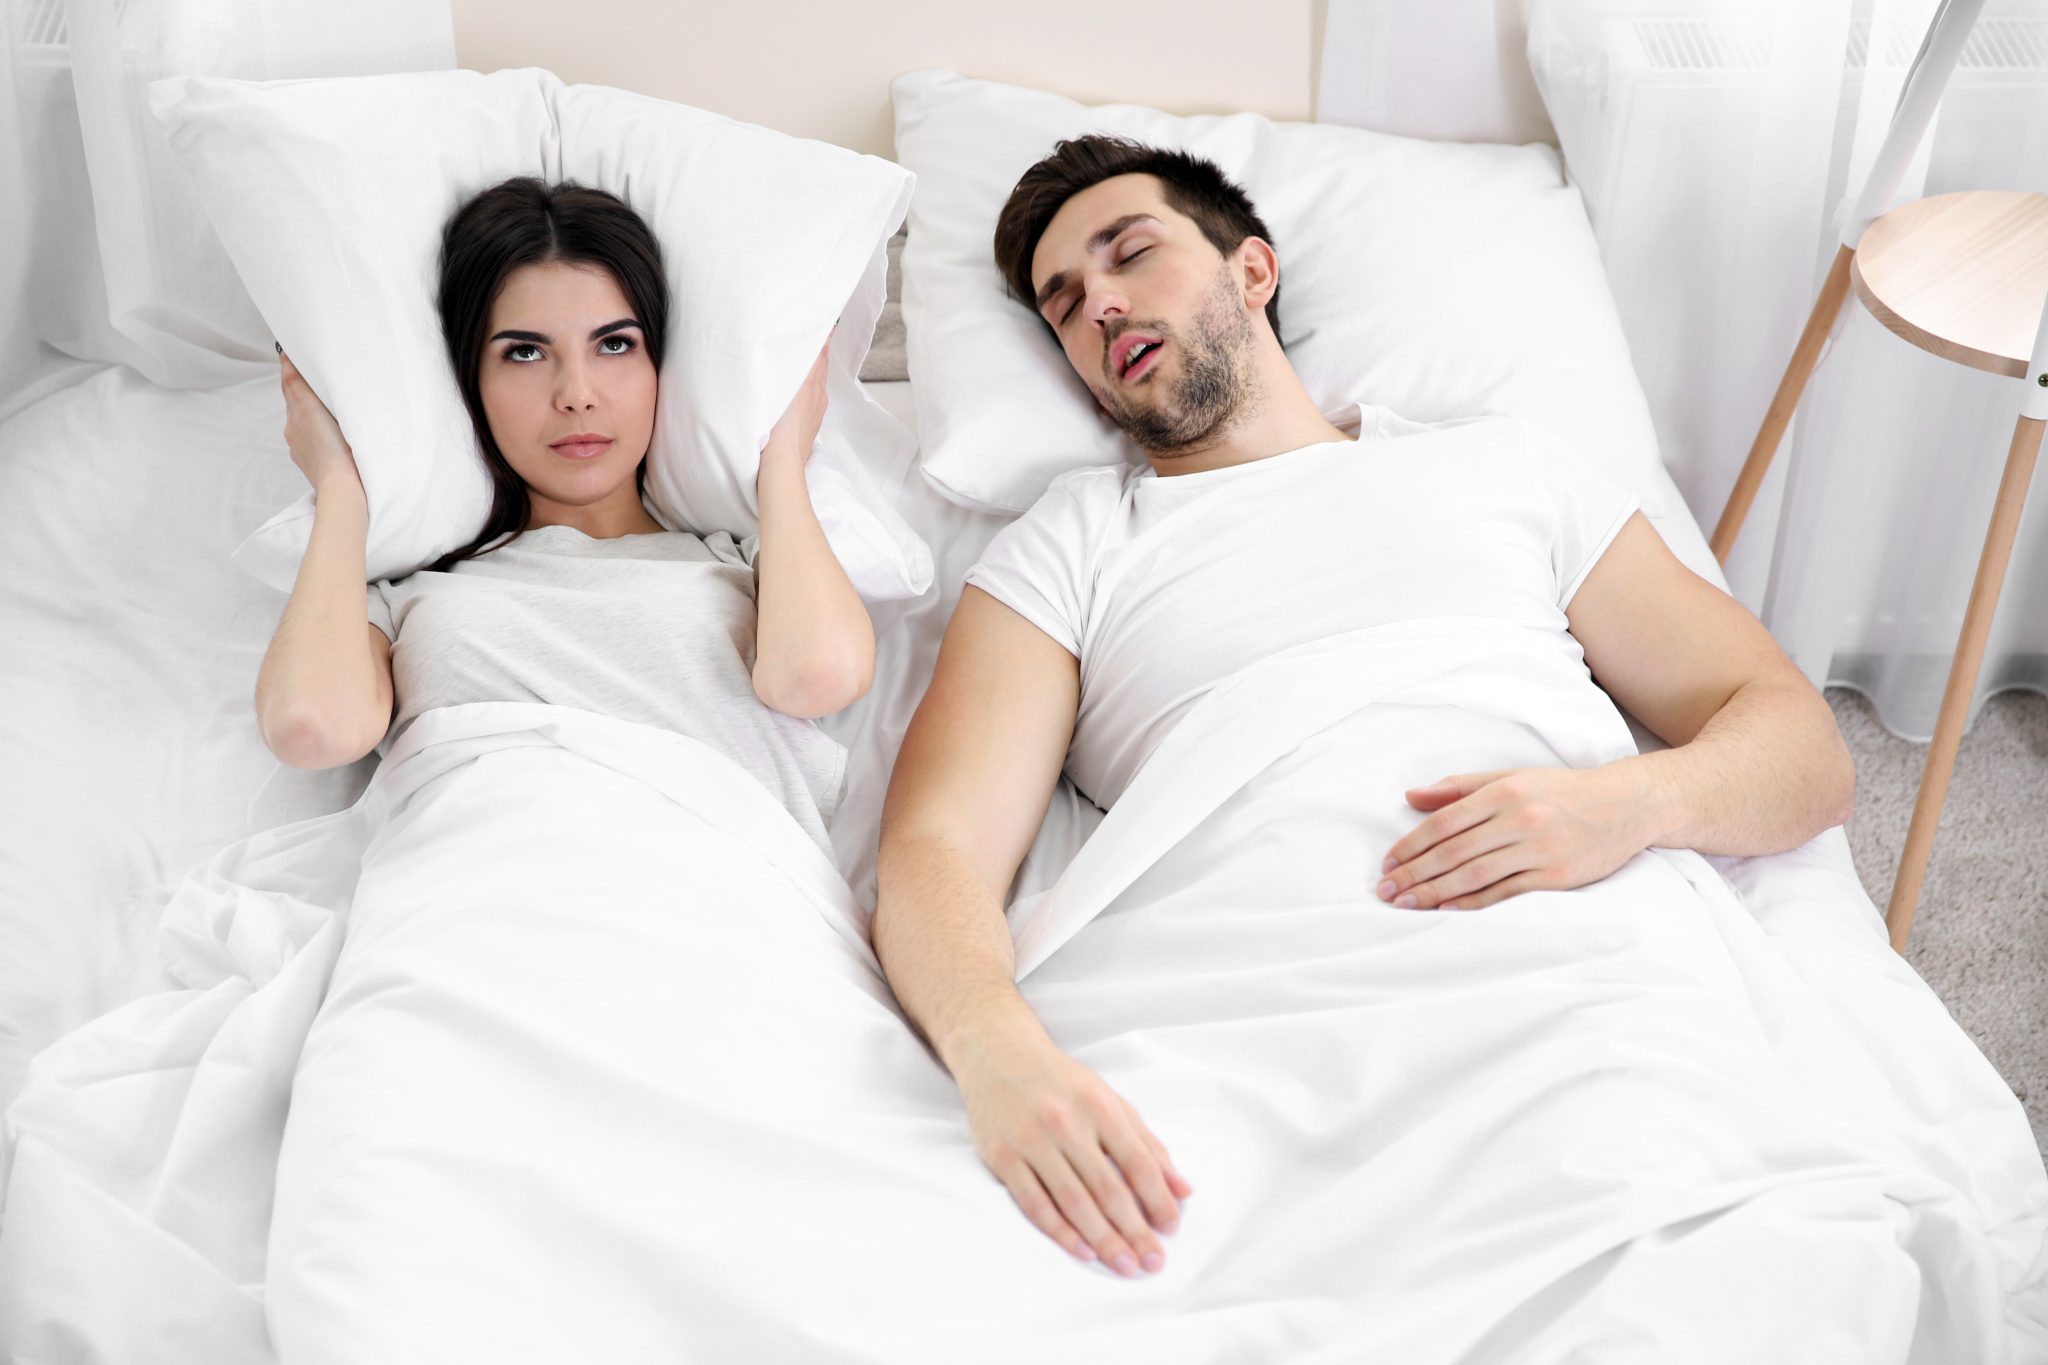 Заниматься любовью с умершим мужем во сне. Храп фото. В спальне храпящие супруги. Сон в разных комнатах. Фотосессия в пижаме на кровати.